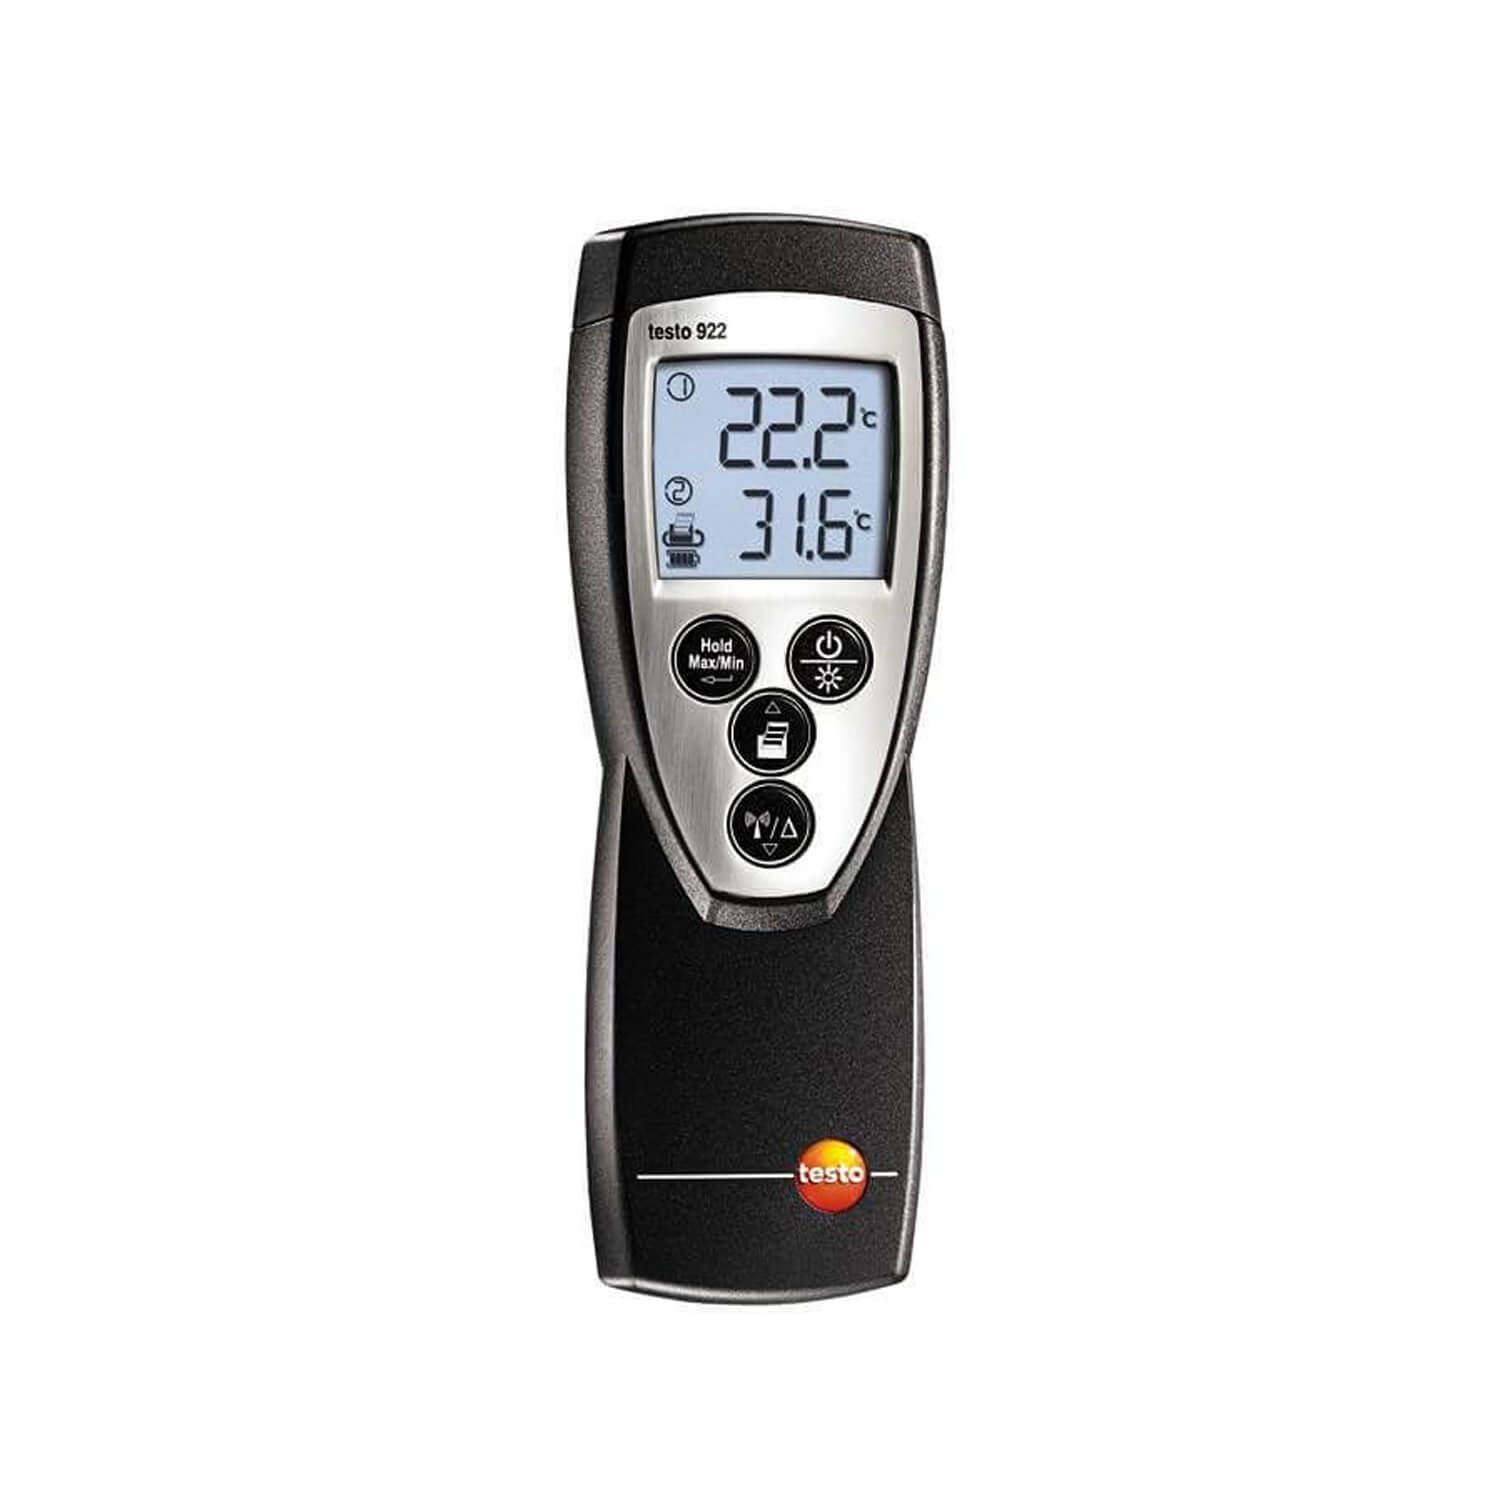  Máy đo nhiệt độ -50 đến +1000 °C Testo 922, chính hãng, BH 12T, có VAT 